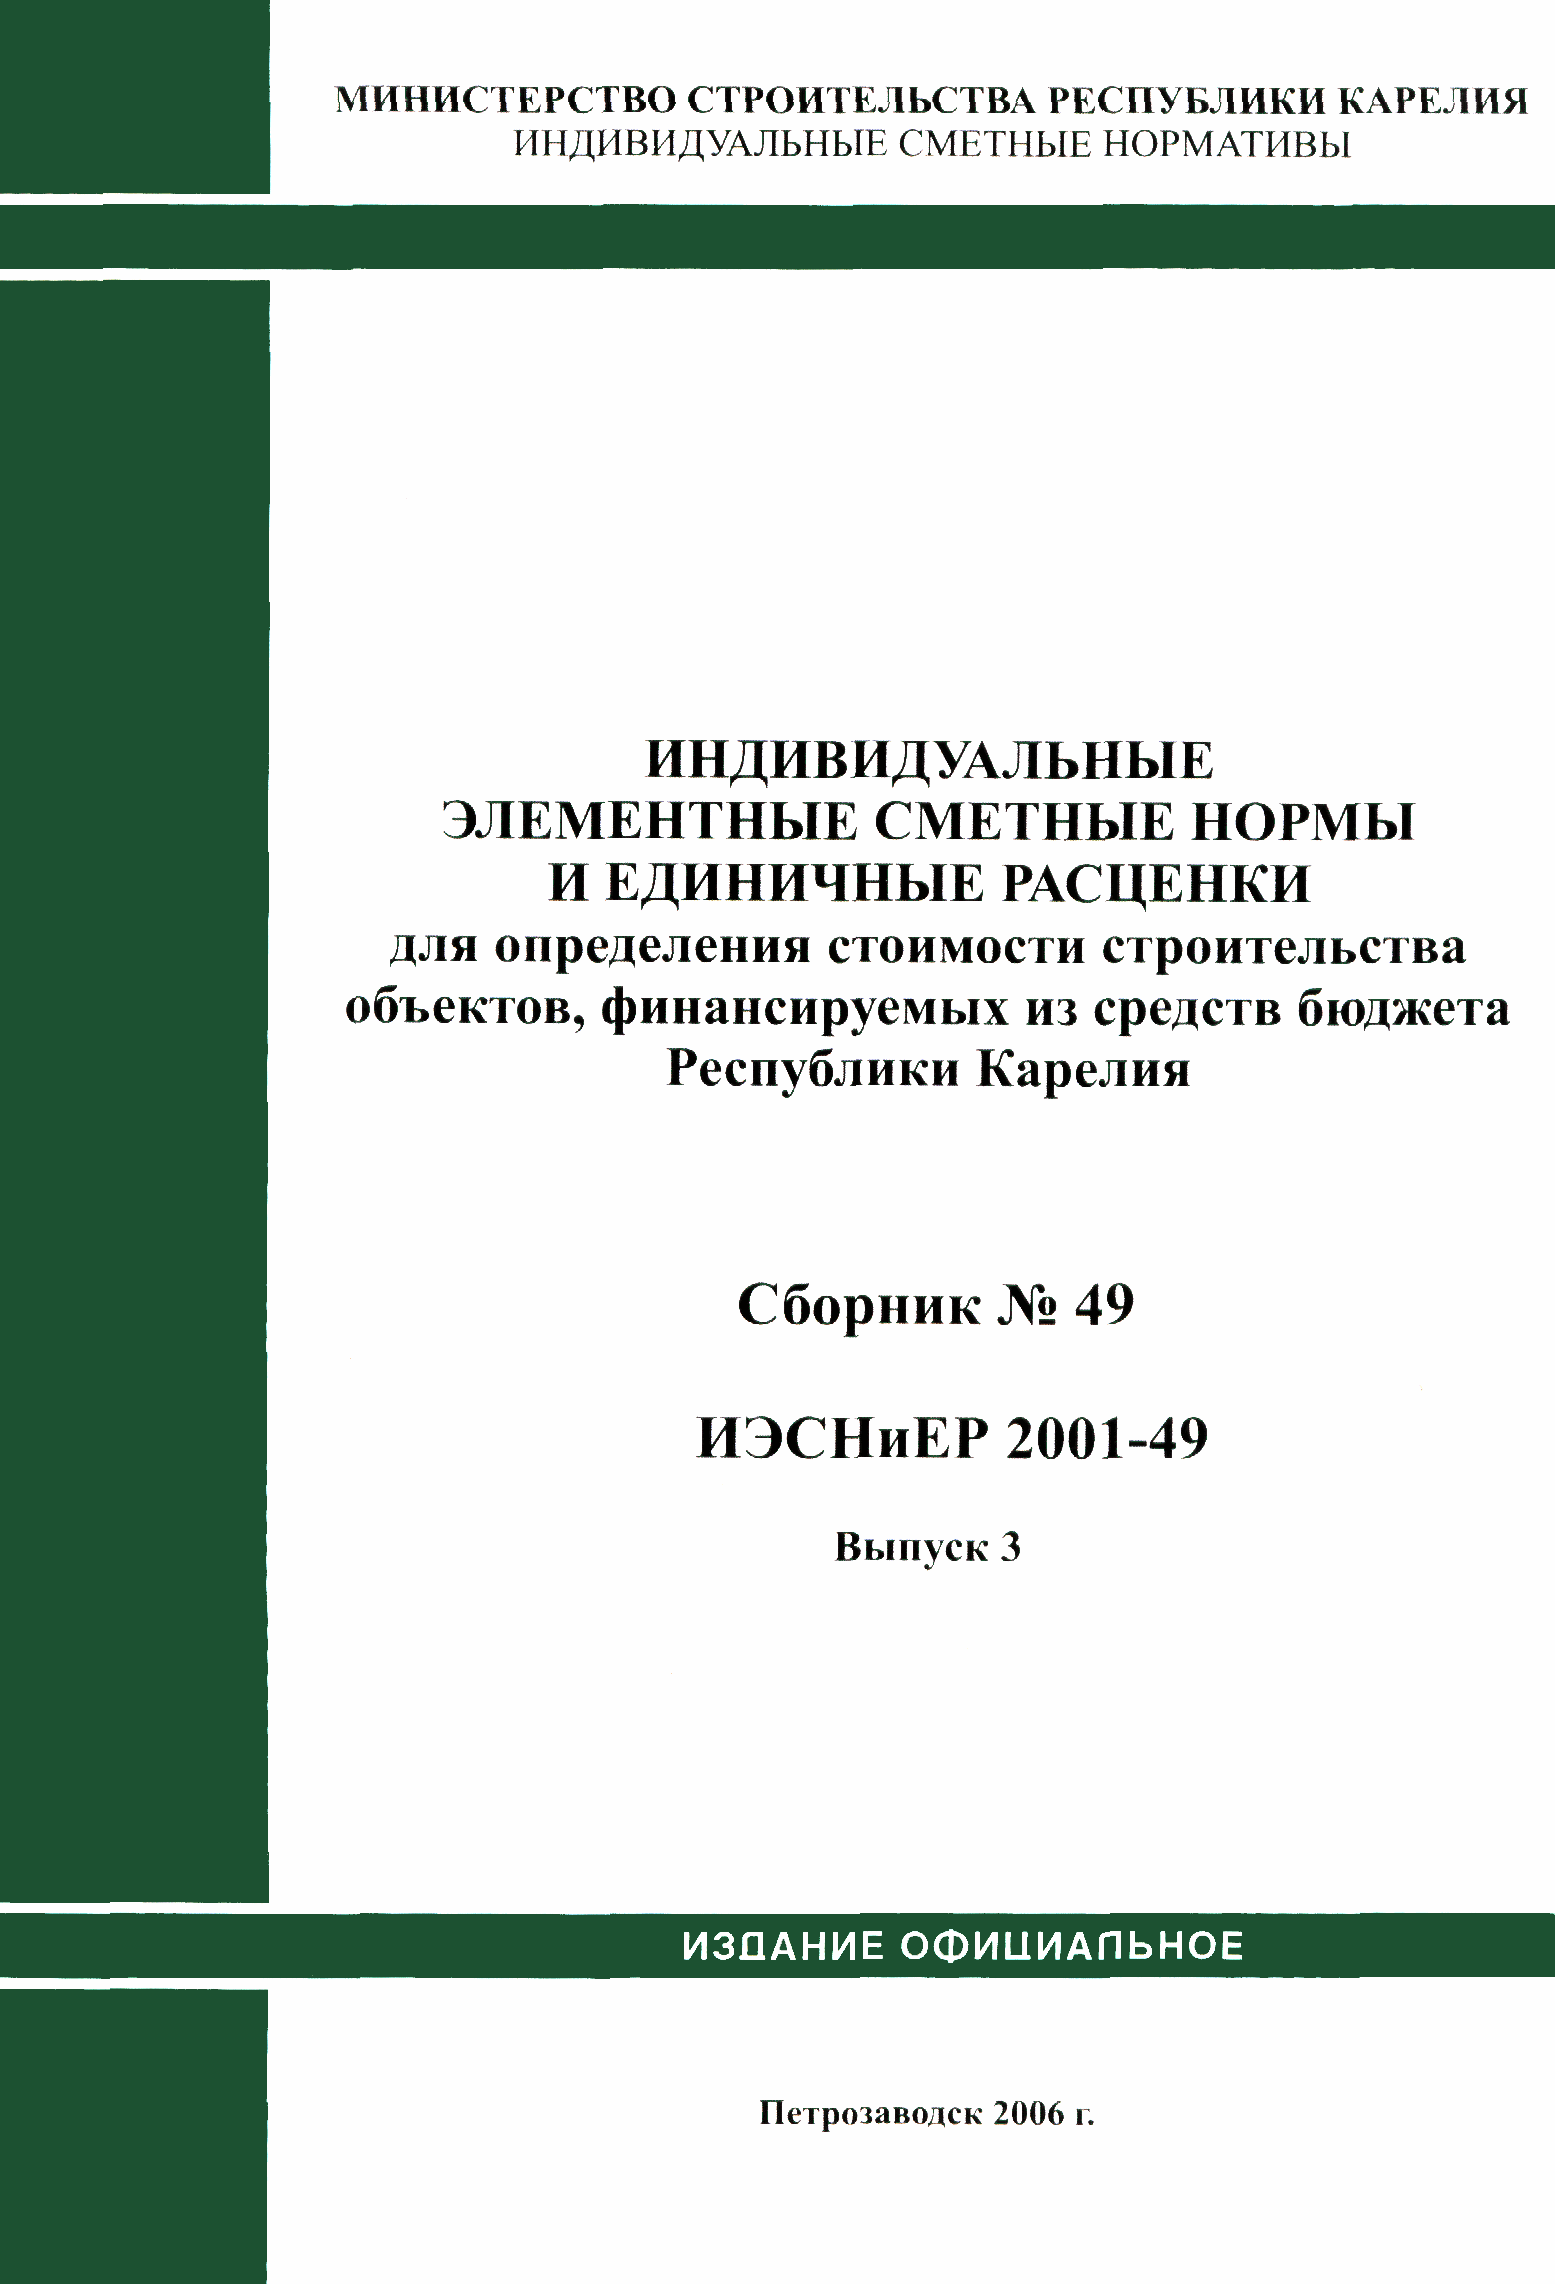 ИЭСНиЕР Республика Карелия 2001-49